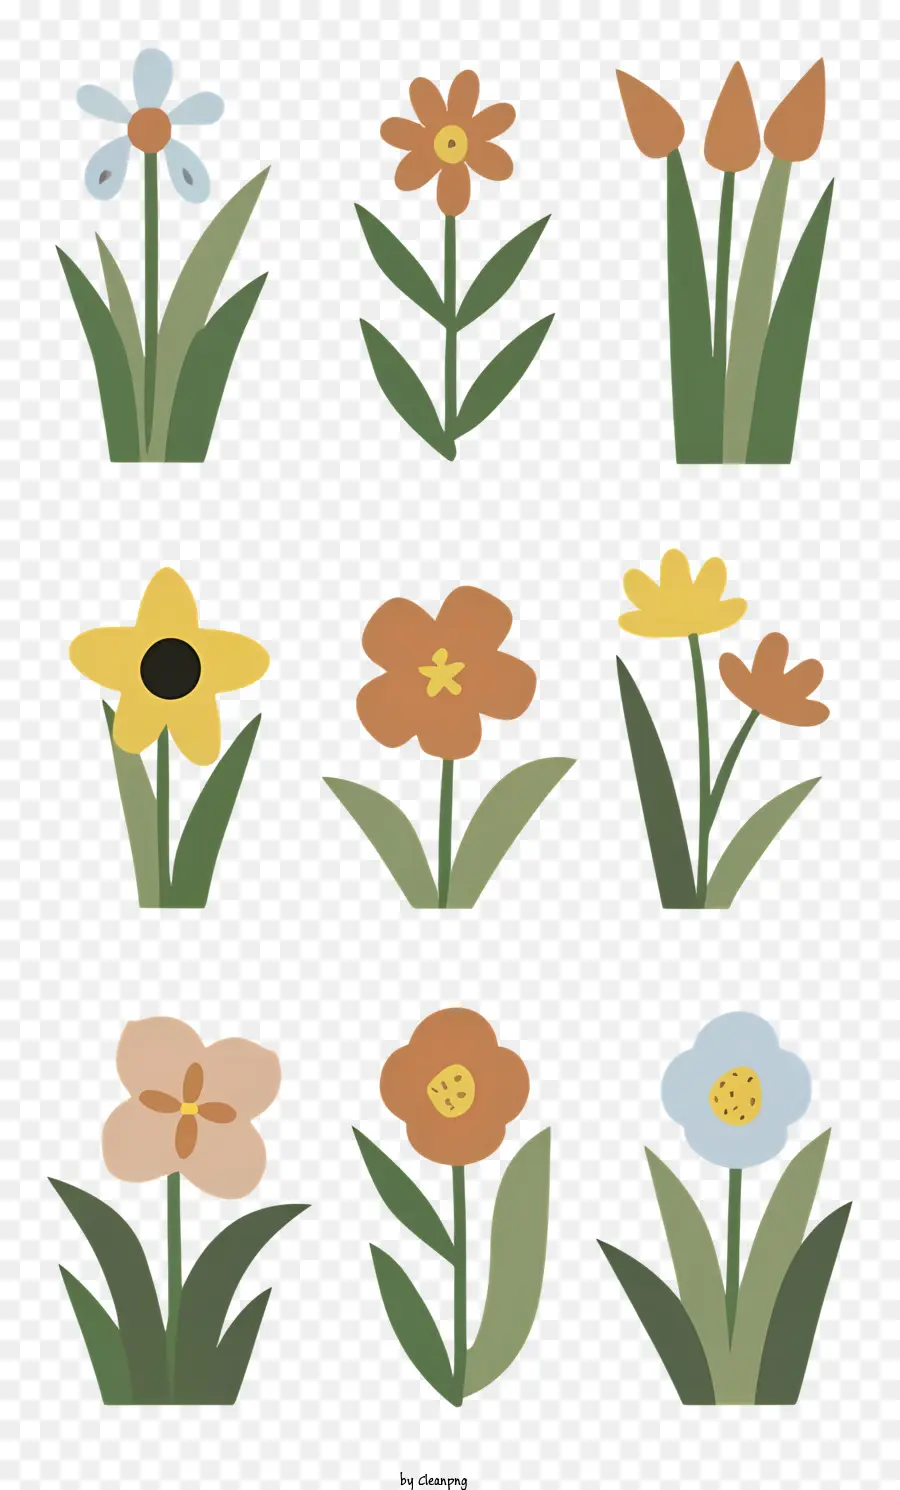 florales Design - Lebendiges und einfaches Blumendesign mit verschiedenen Blumen